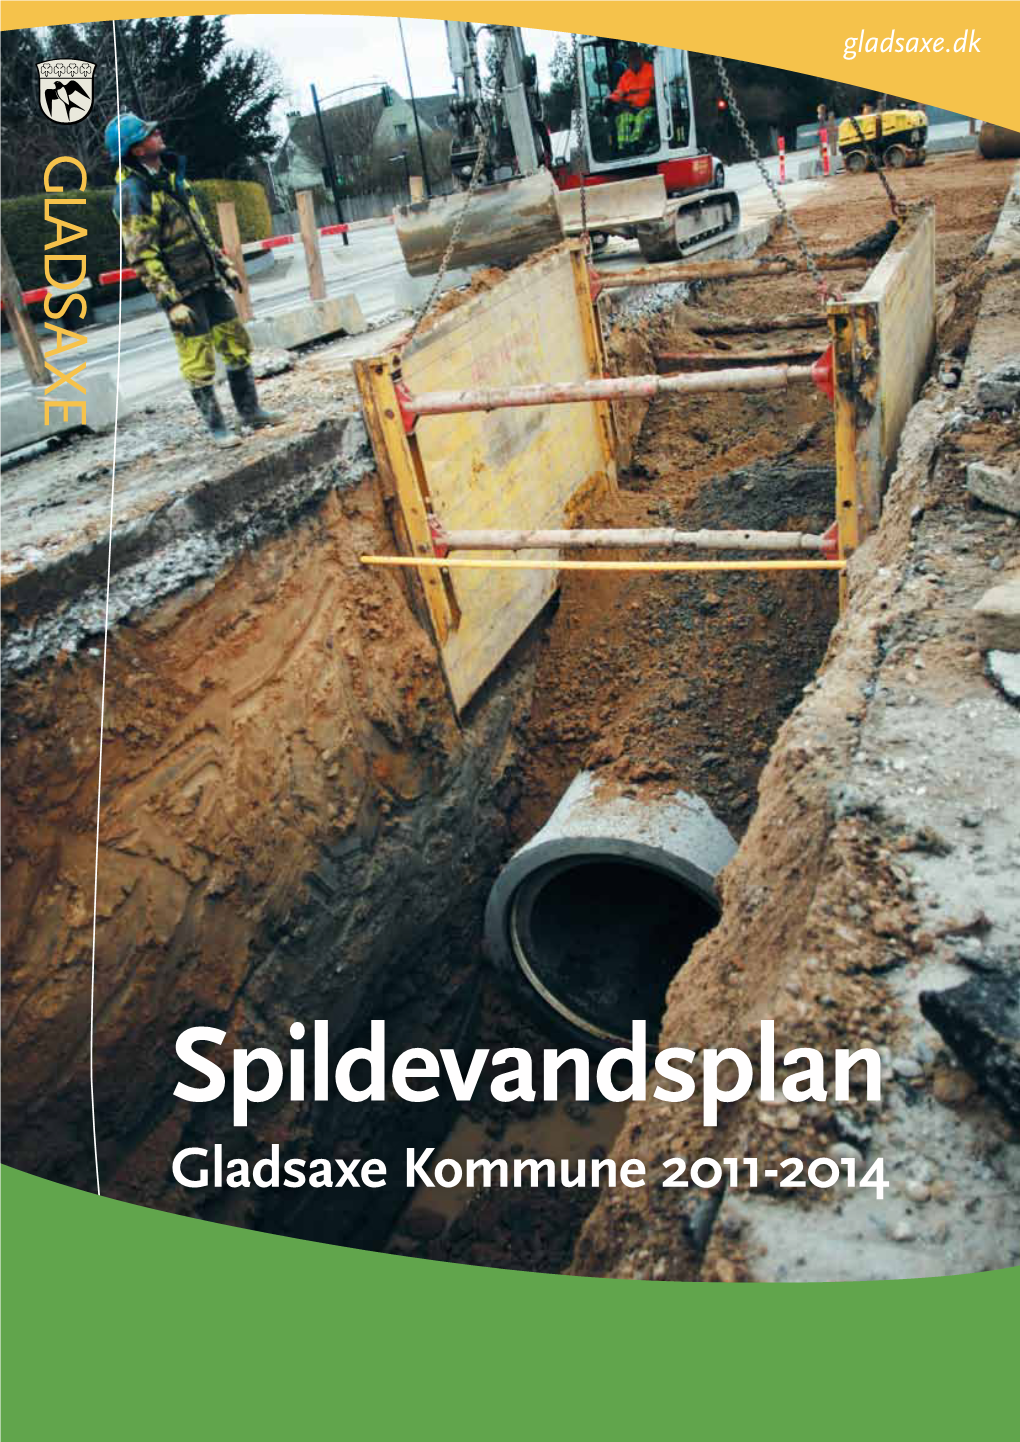 Spildevandsplan, 2011-2015, Gladsaxe Kommune